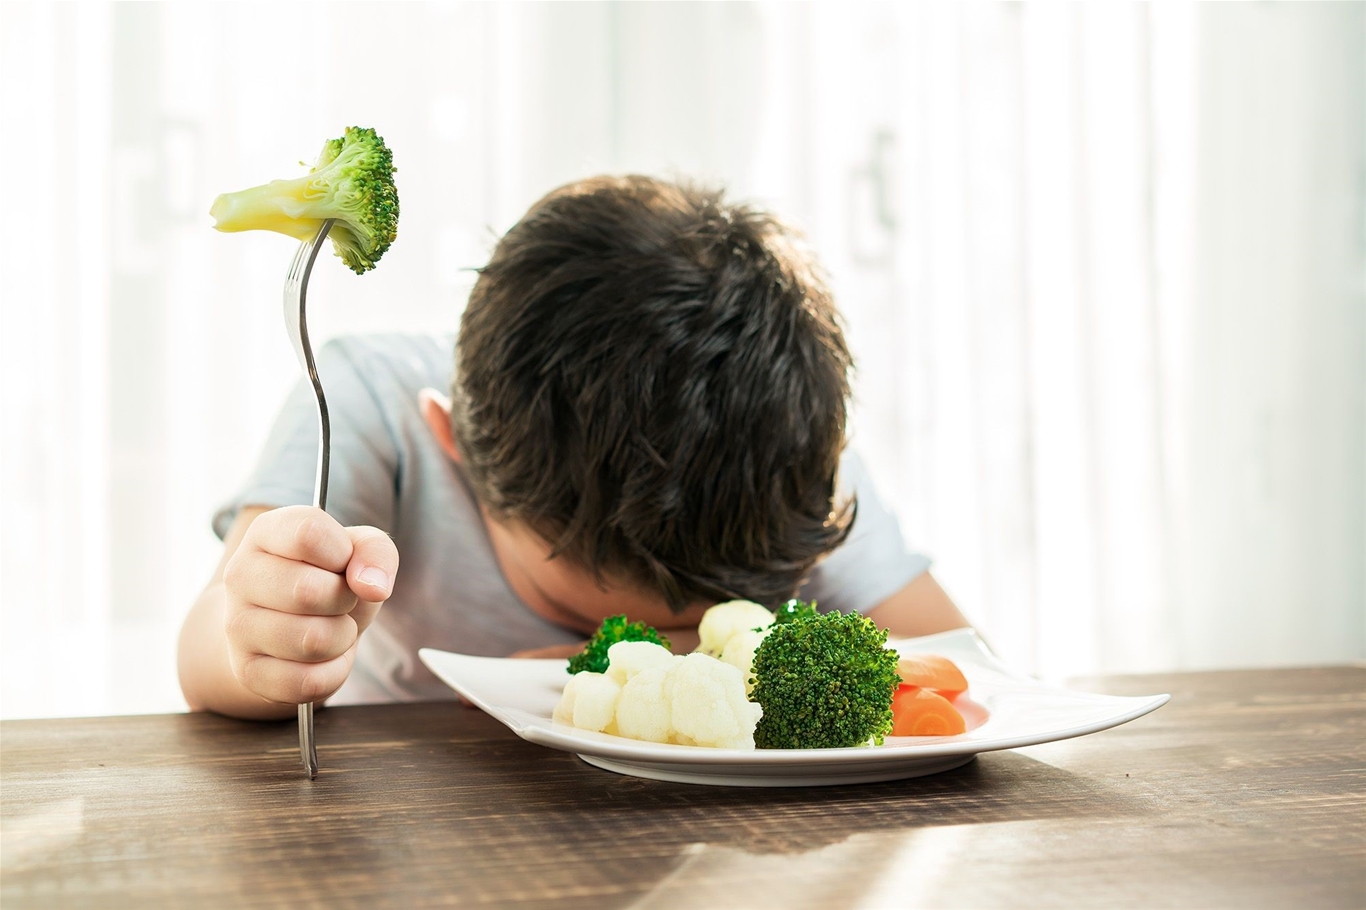 Giải đáp thắc mắc cho mẹ Phải làm gì khi trẻ không chịu ăn rau?